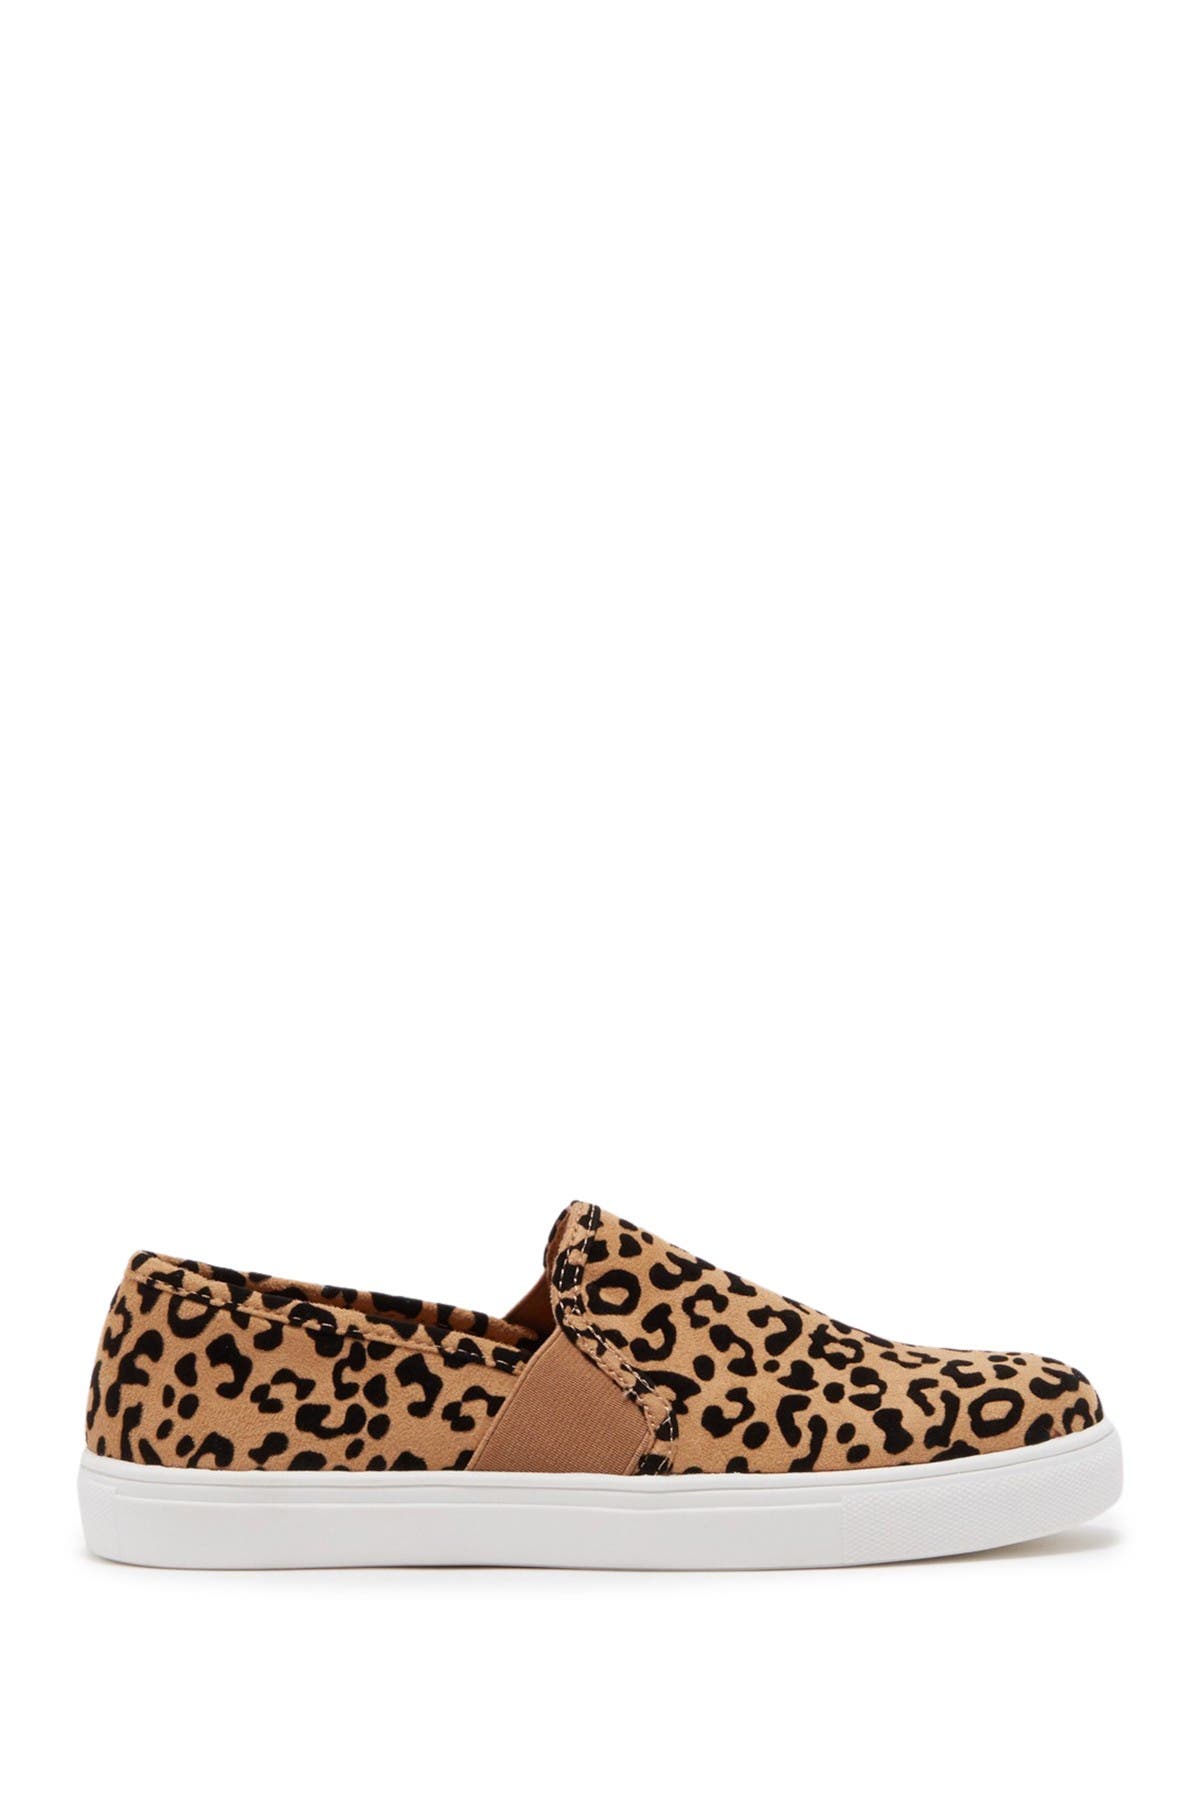 slip on leopard sneakers